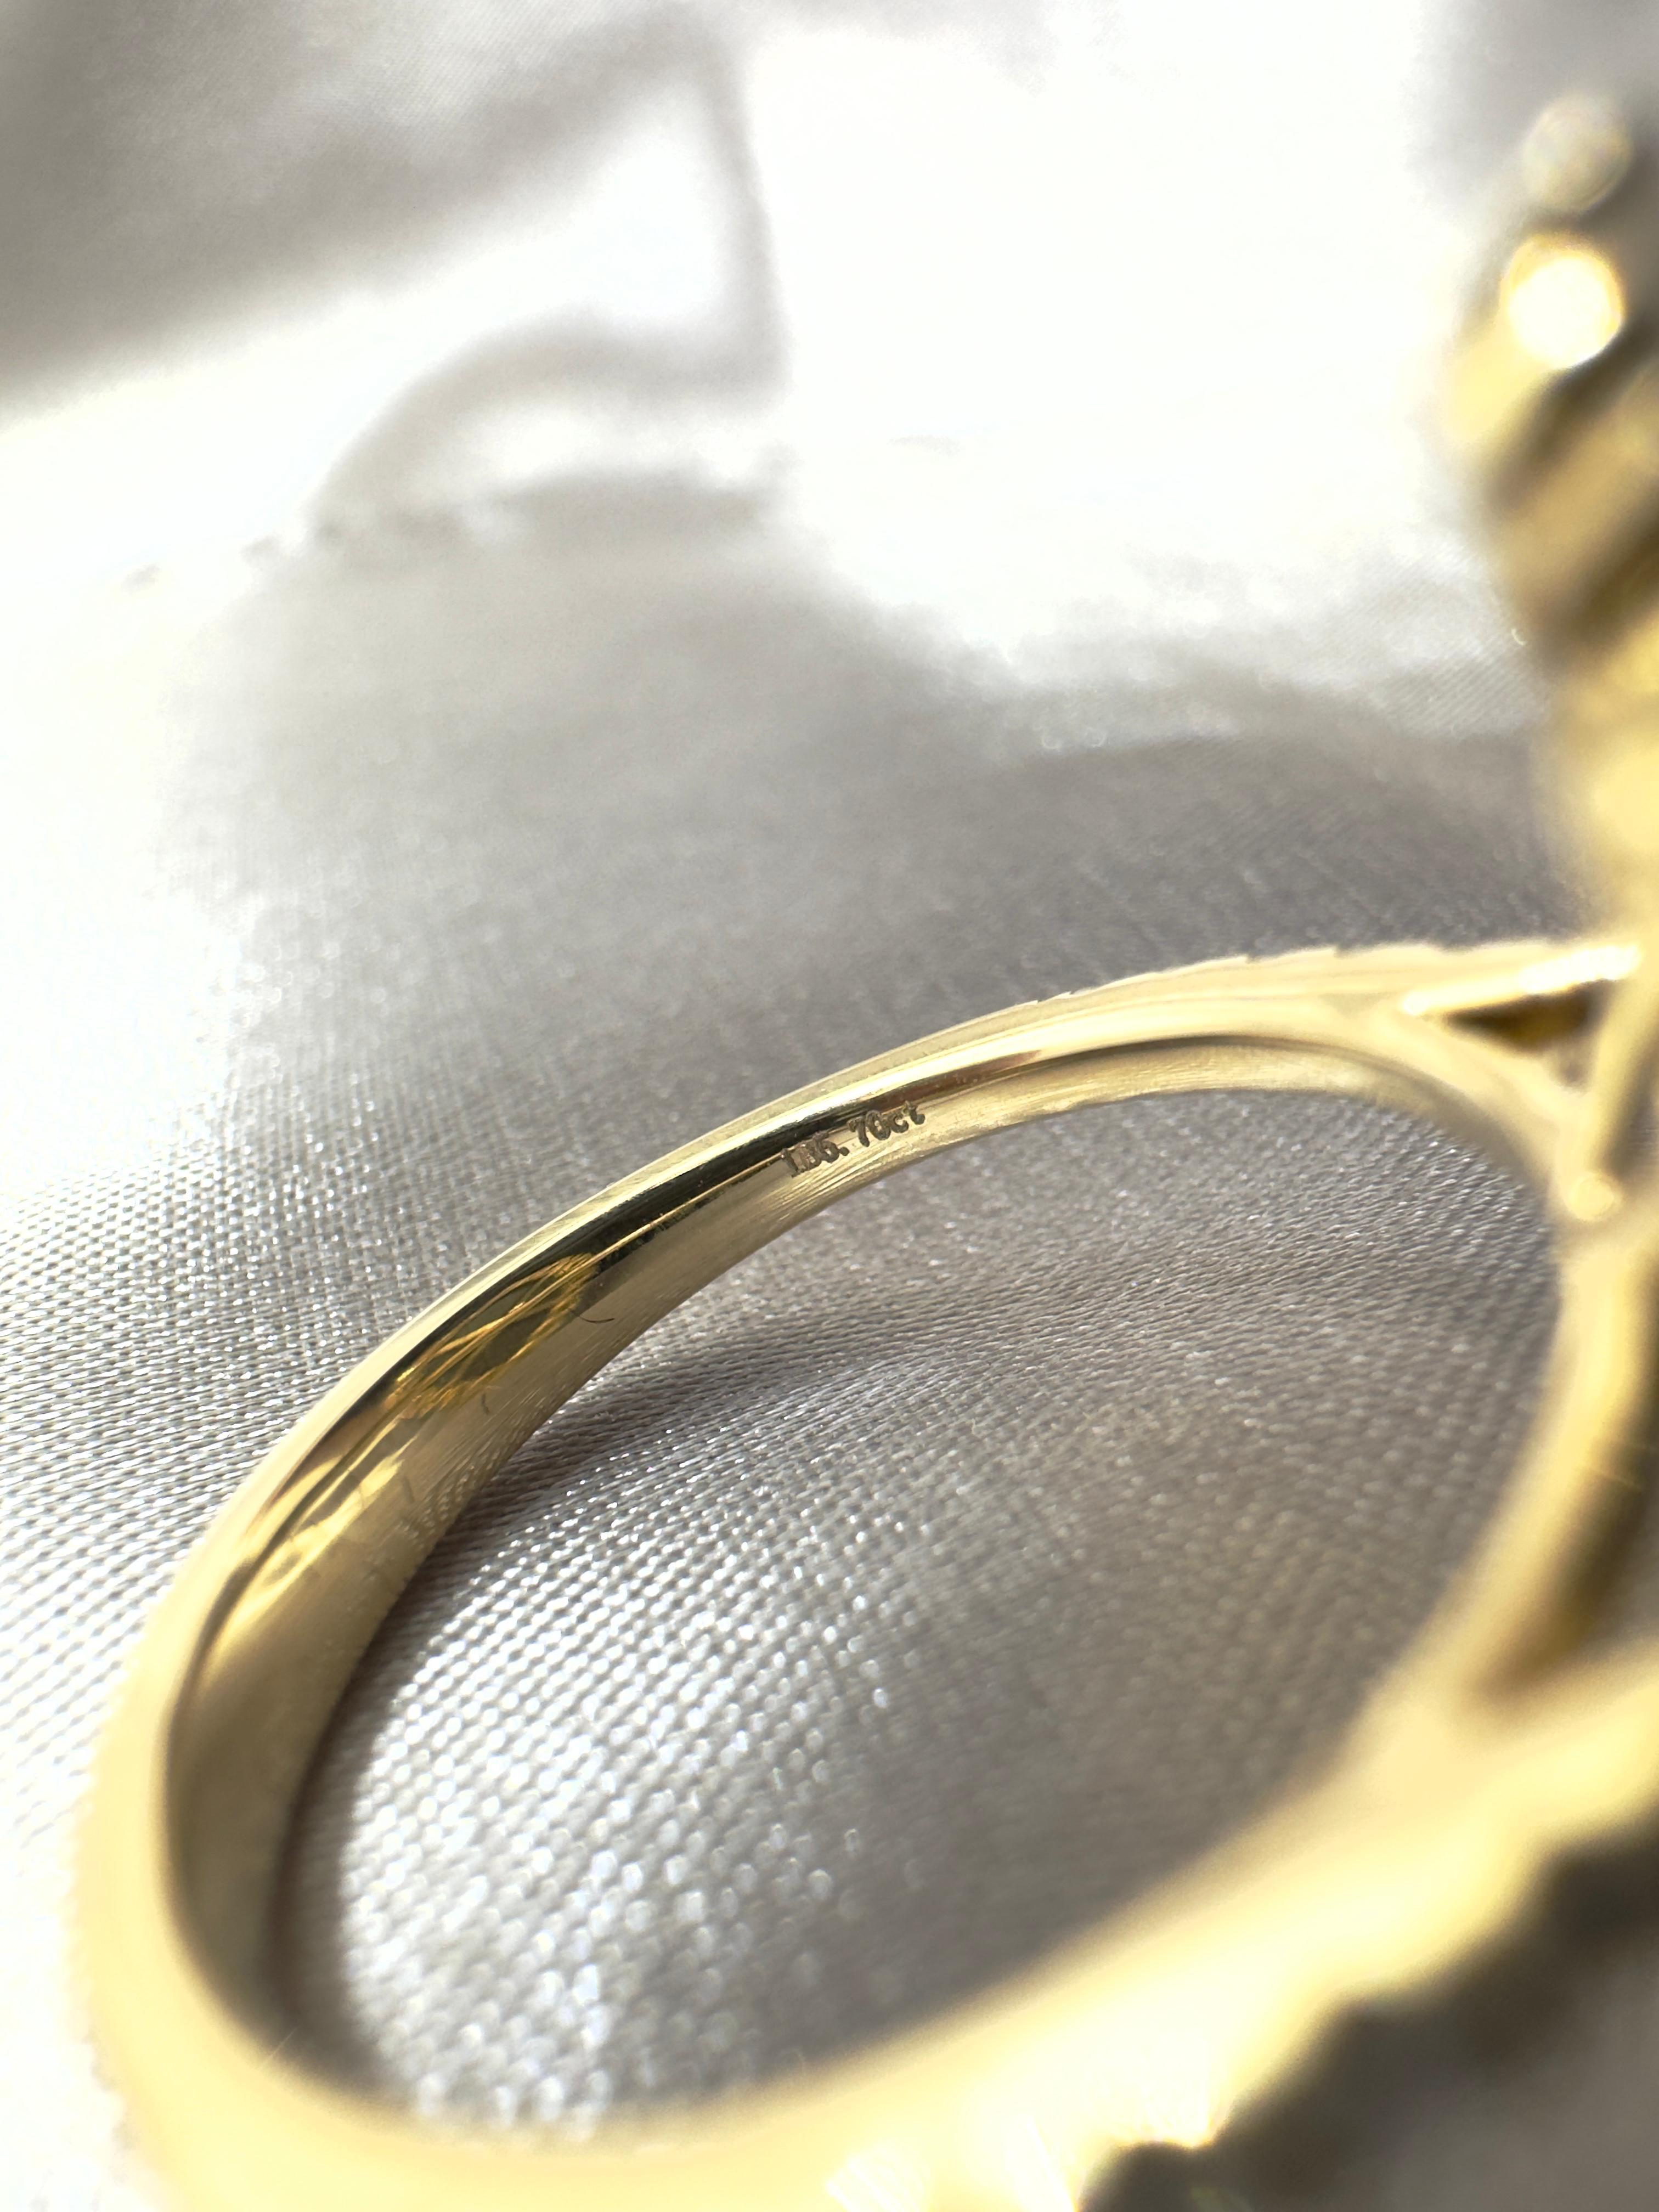 IGI CERTIFIED Vintage 5.70 Carat Black Diamond Ring in 14 Karat Yellow Gold For Sale 1